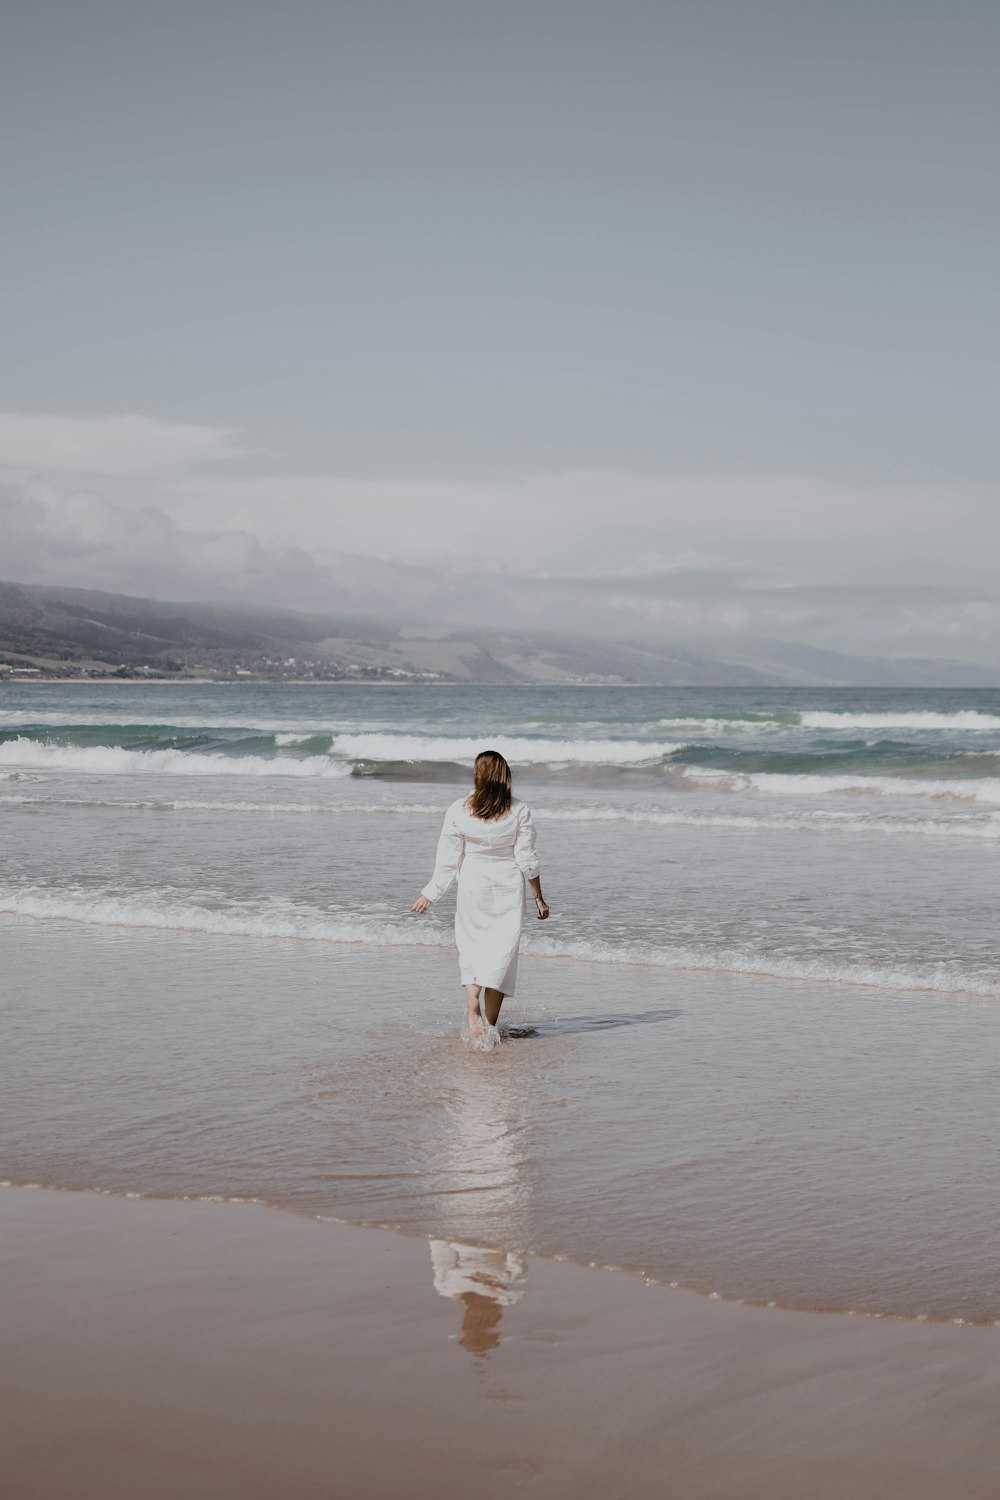 Eine Frau in einem weißen Kleid spaziert am Strand